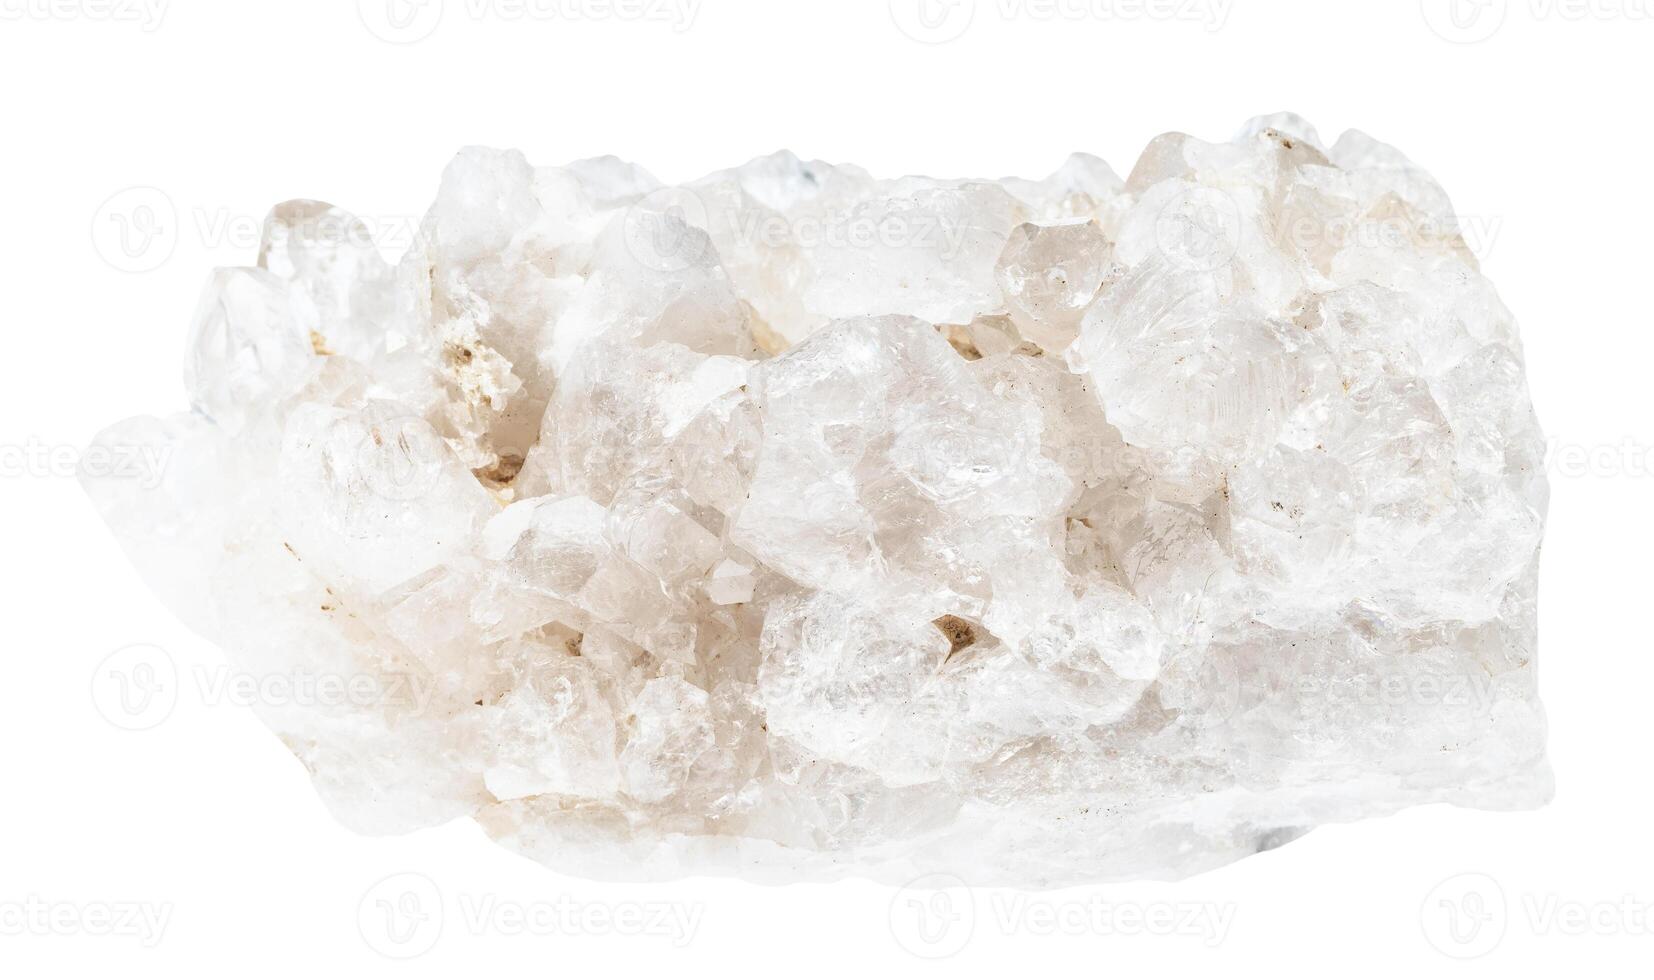 druze de clair quartz minéral isoler photo